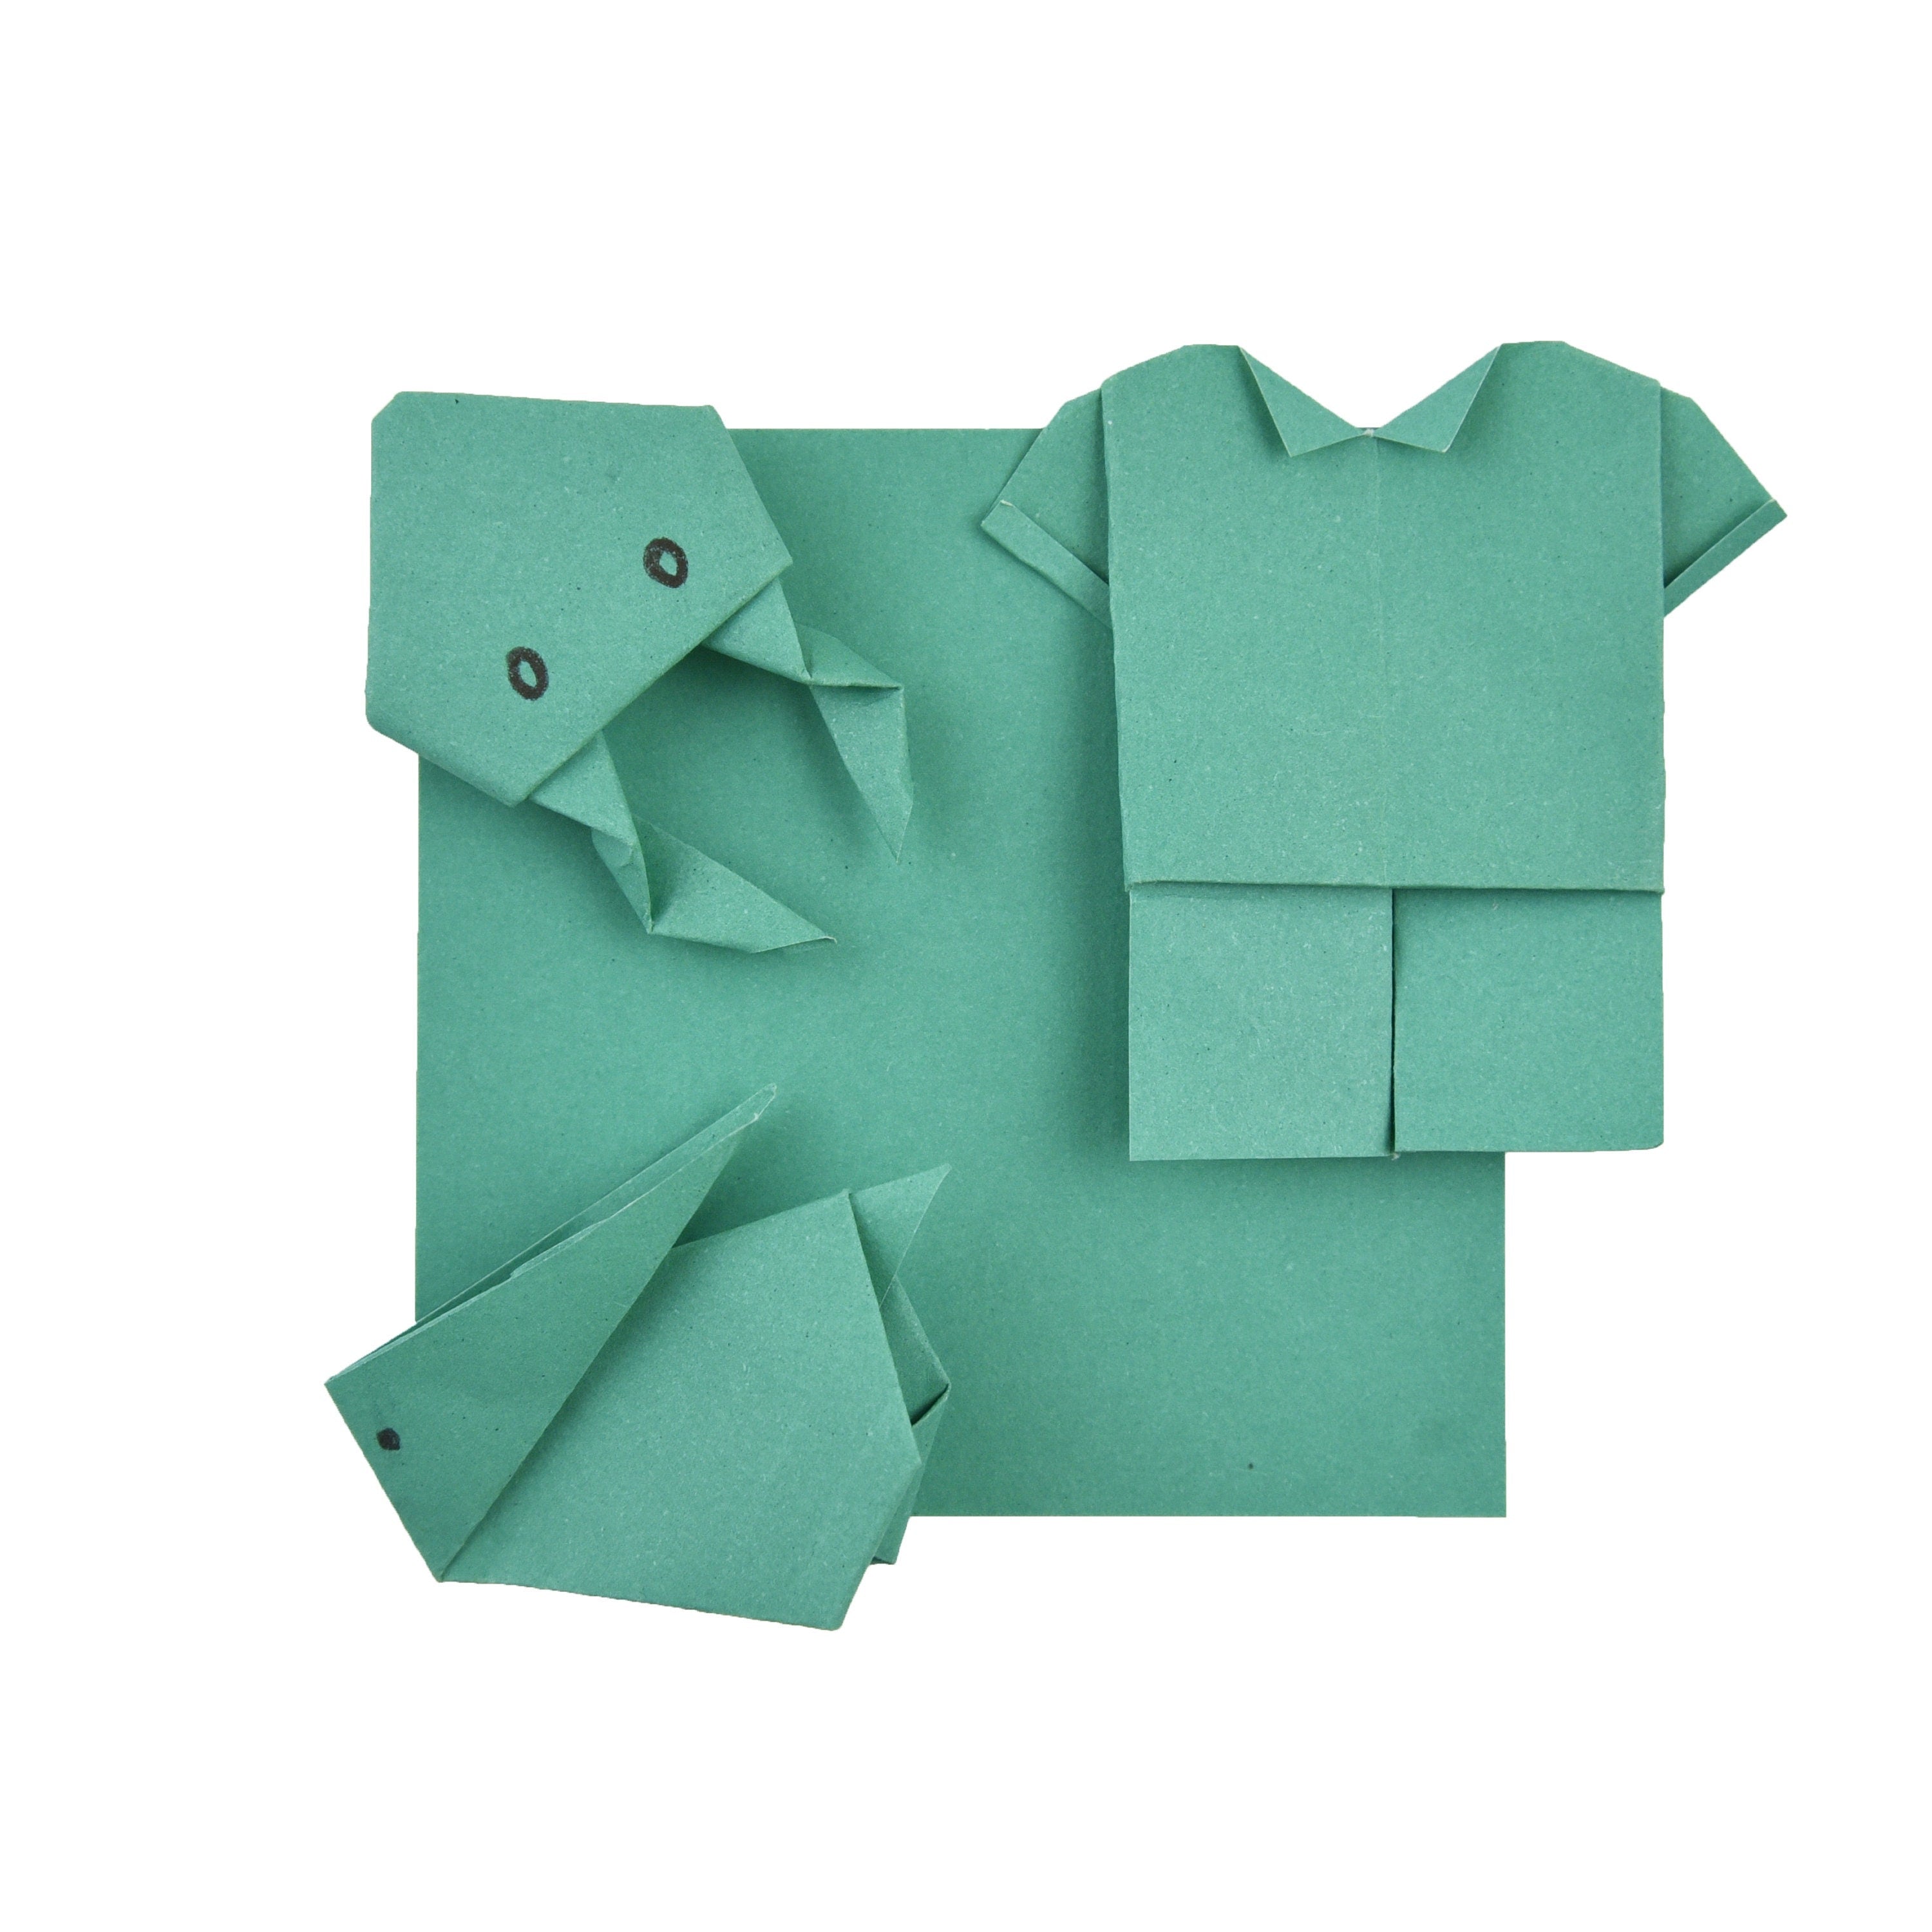 100 fogli di carta origami - 6x6 pollici - Confezione di carta quadrata per piegare, gru origami e decorazioni - S21